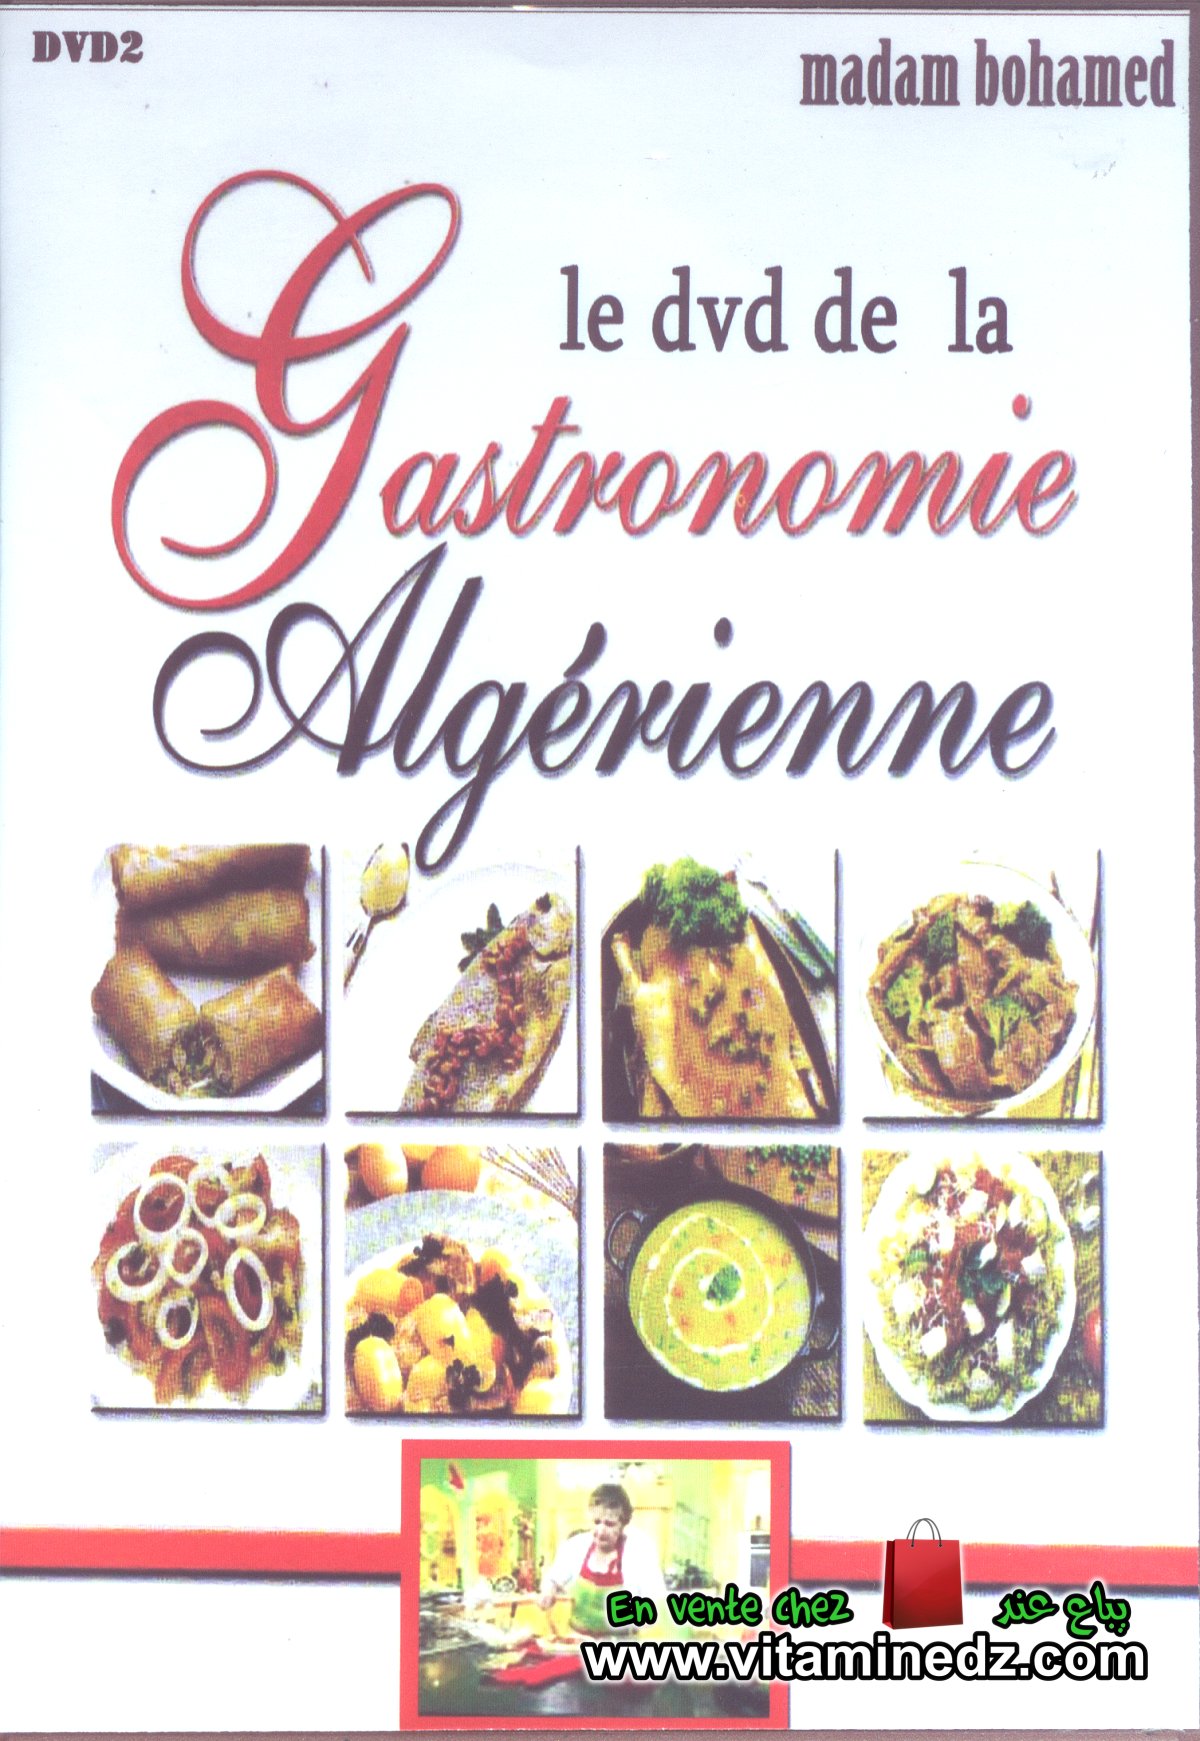 Madame Bouhamed - Gastronomie Algérienne